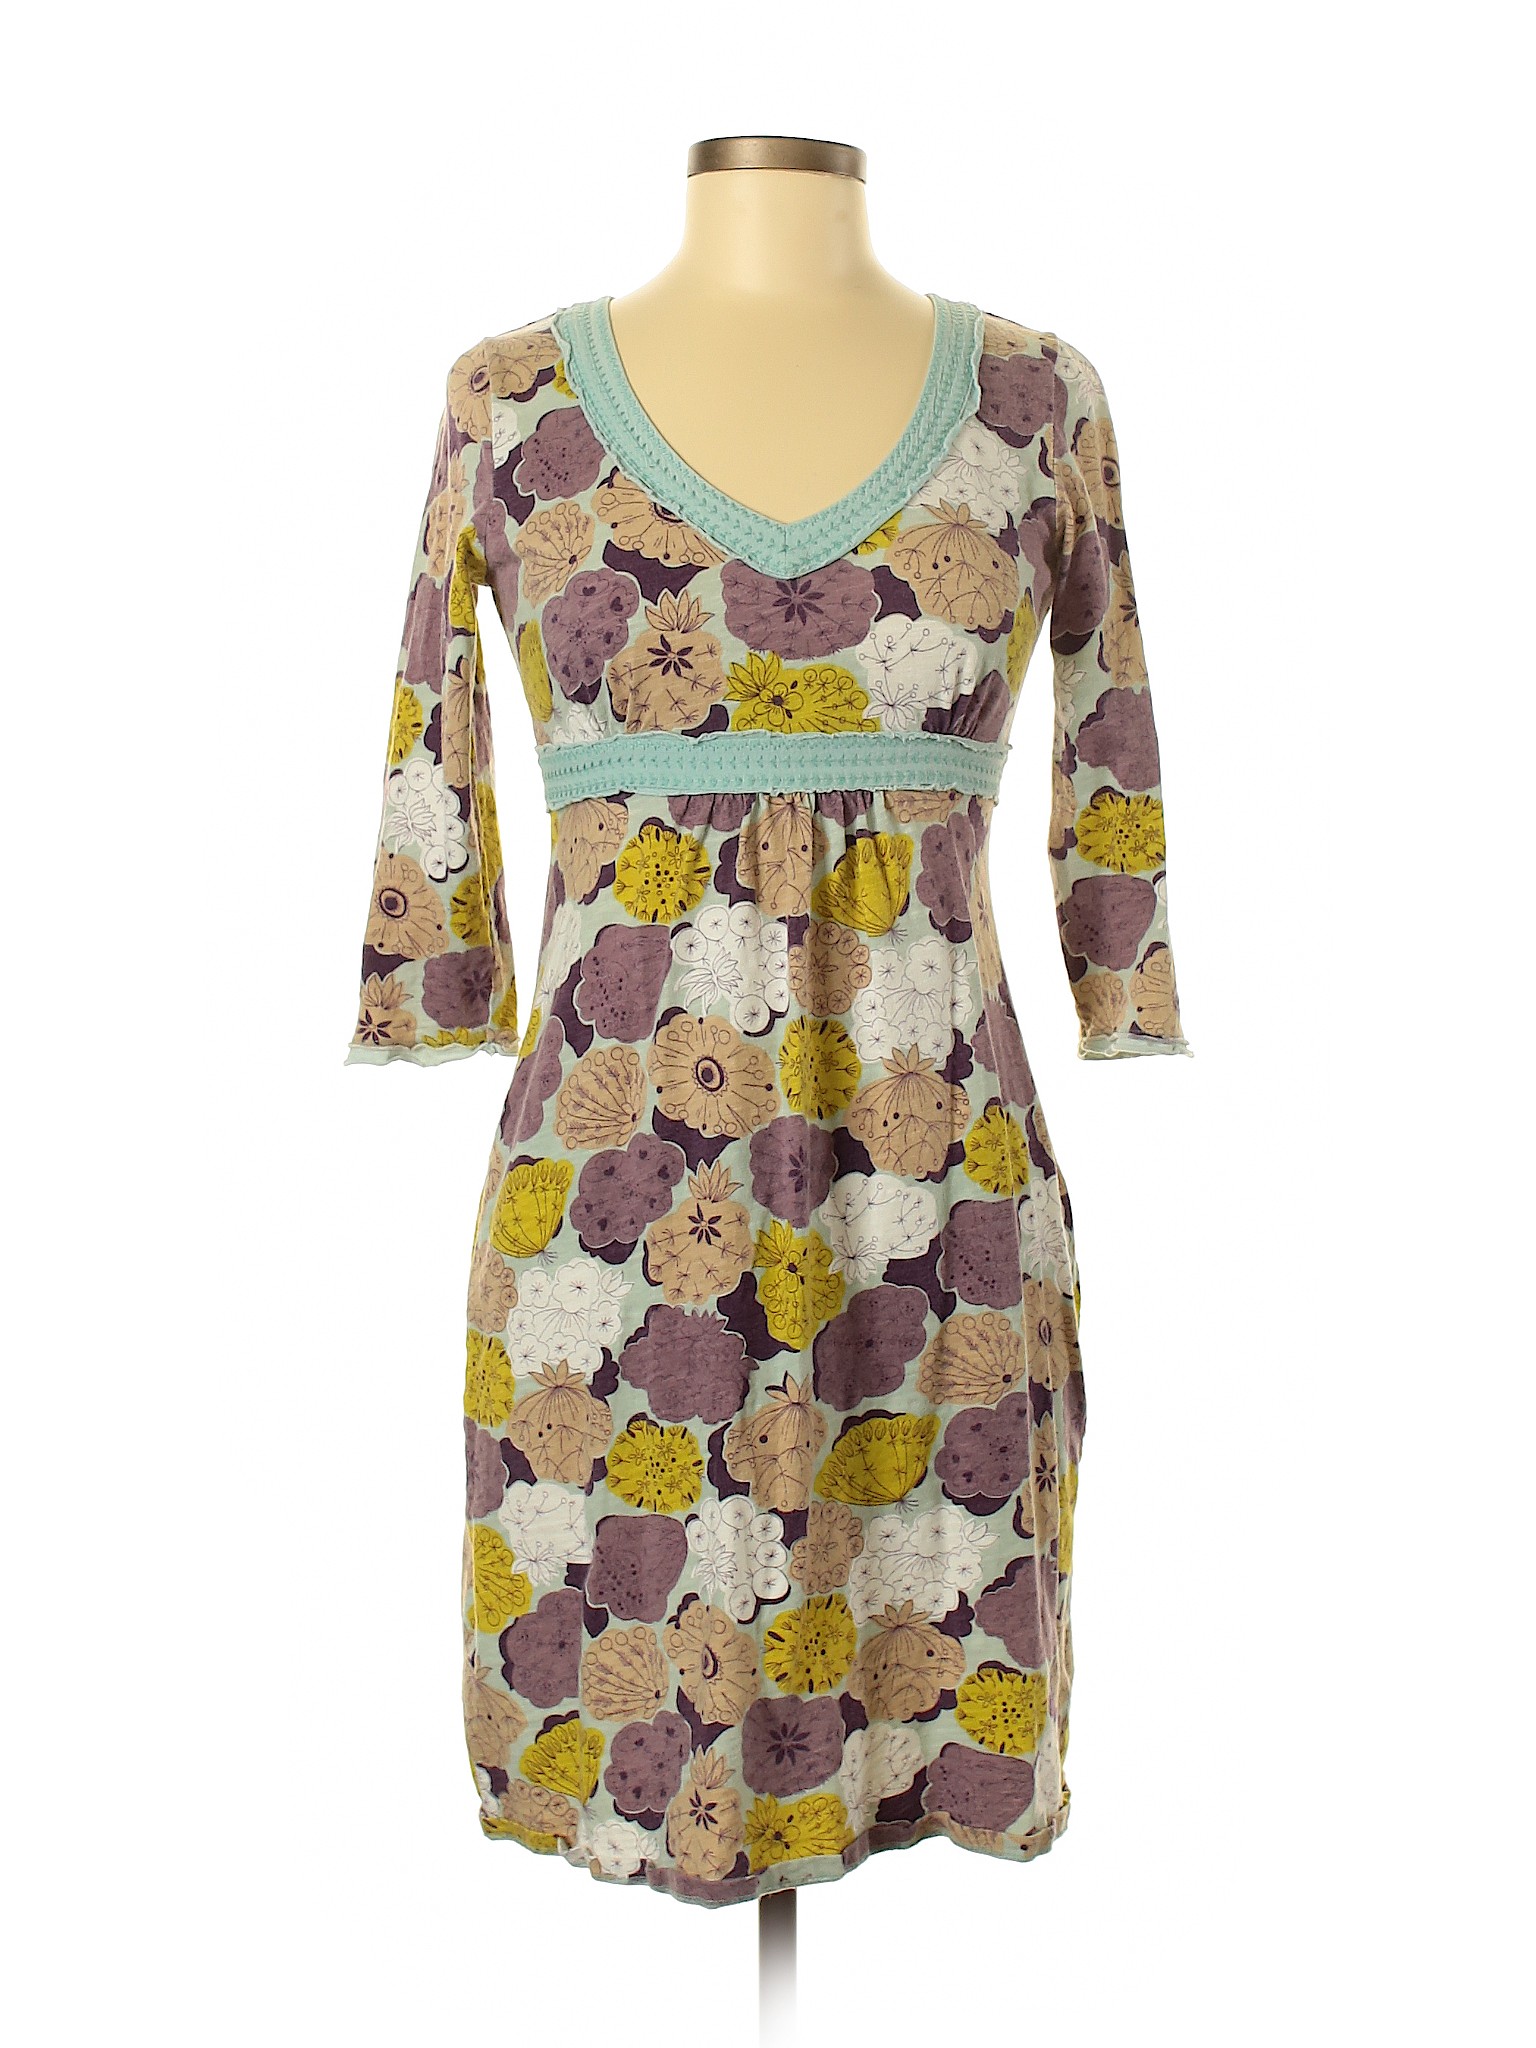 Boden Women Purple Casual Dress 4 | eBay